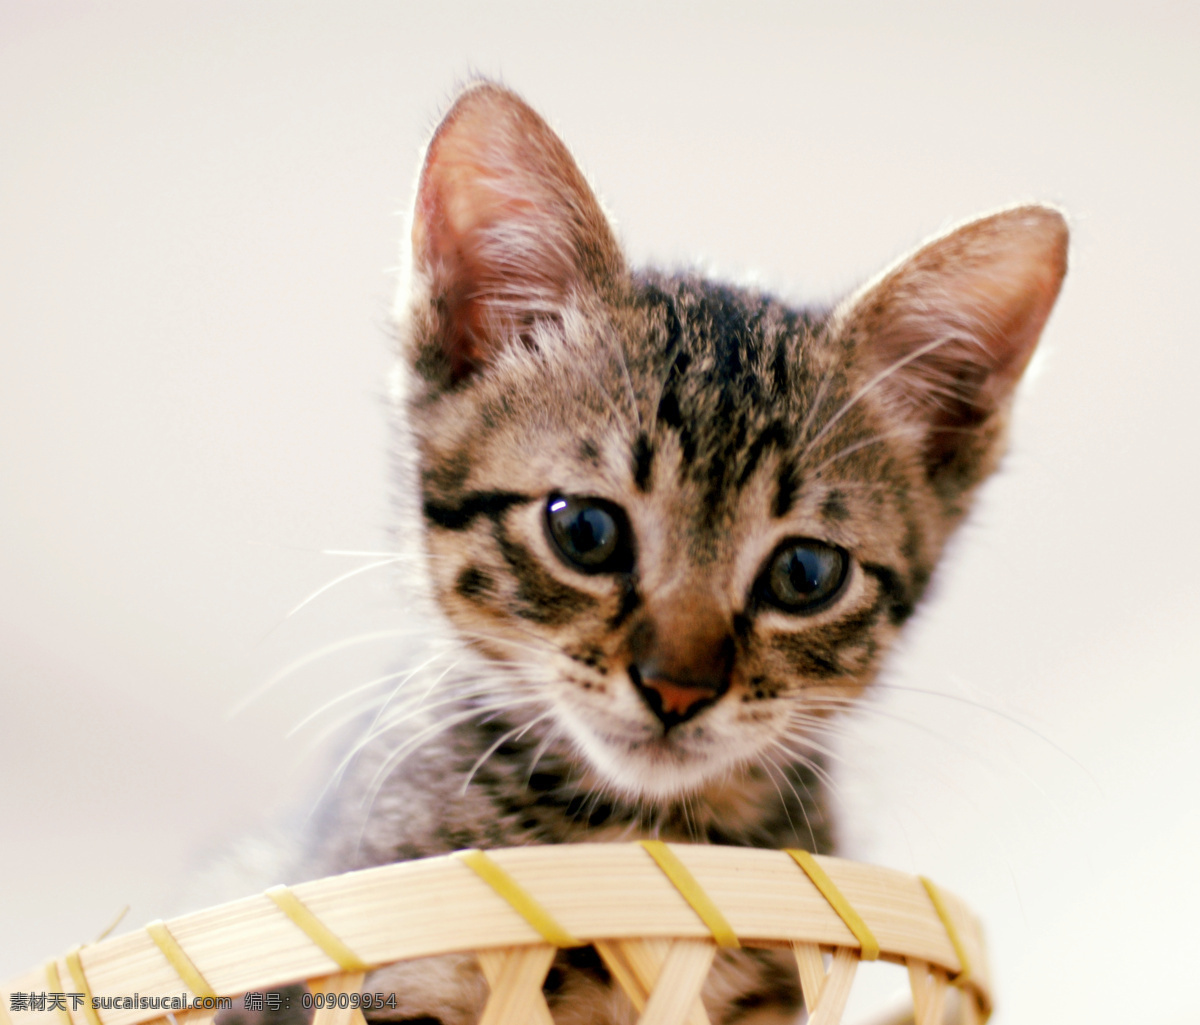 筐子里的小猫 猫 小猫咪 特写 筐子 动物摄影 生物世界 家禽家畜